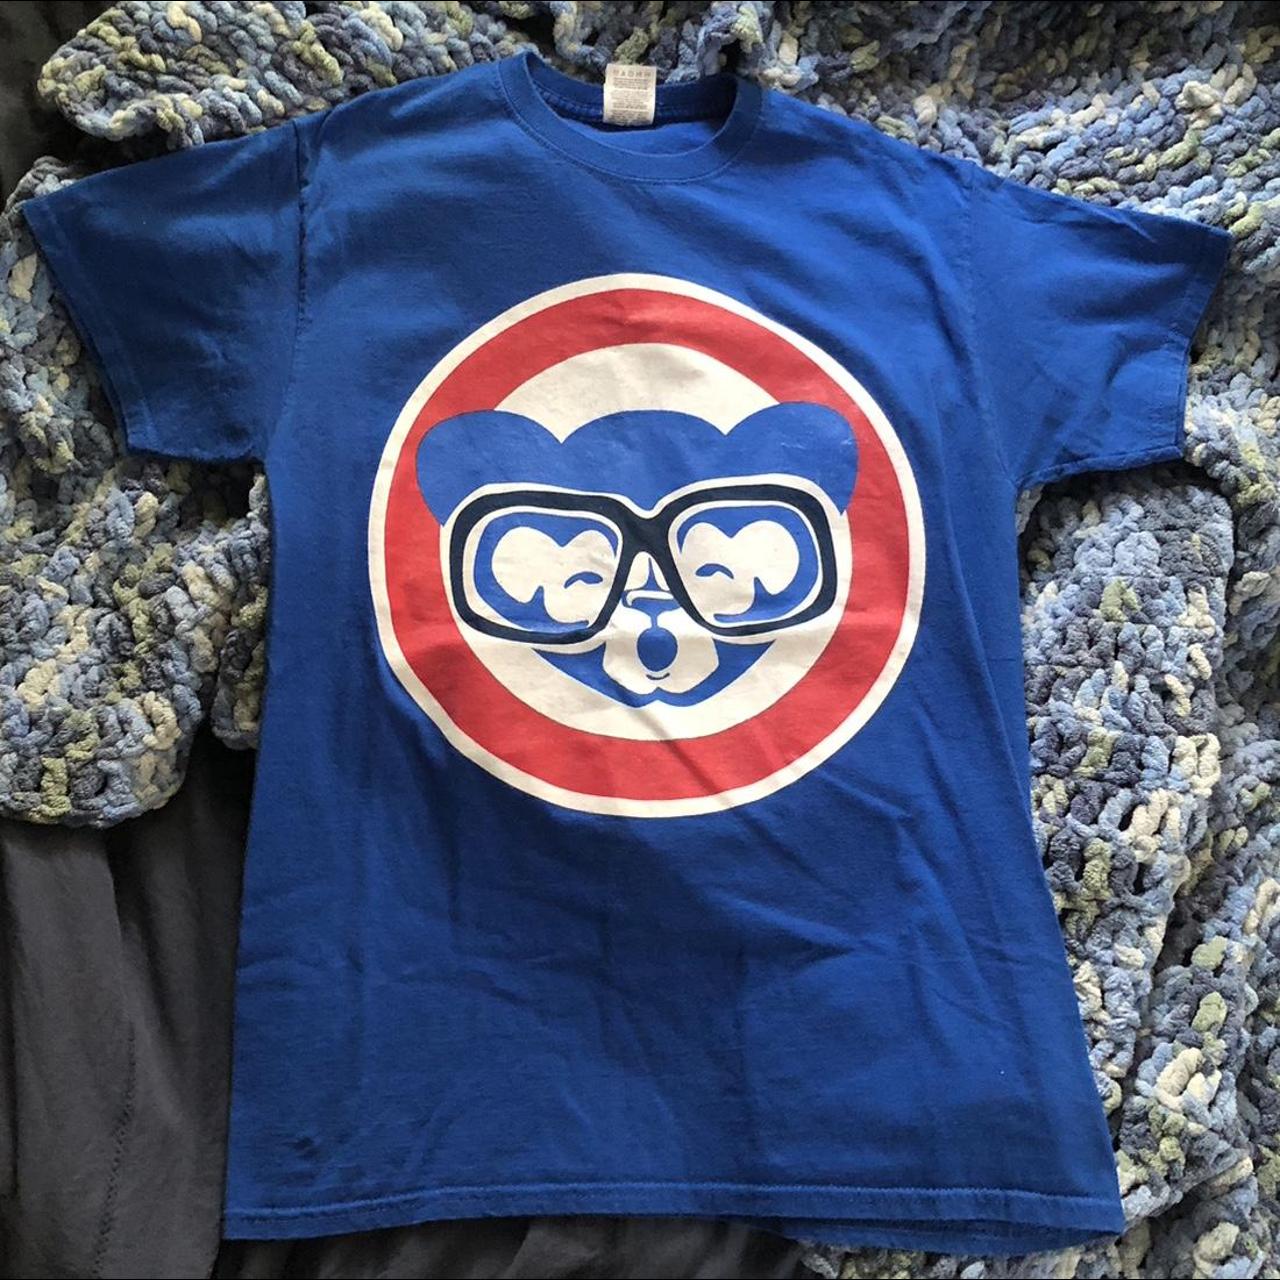 Y2K Wrigley Field Cub Style Harry Caray T-Shirt Blue - Depop